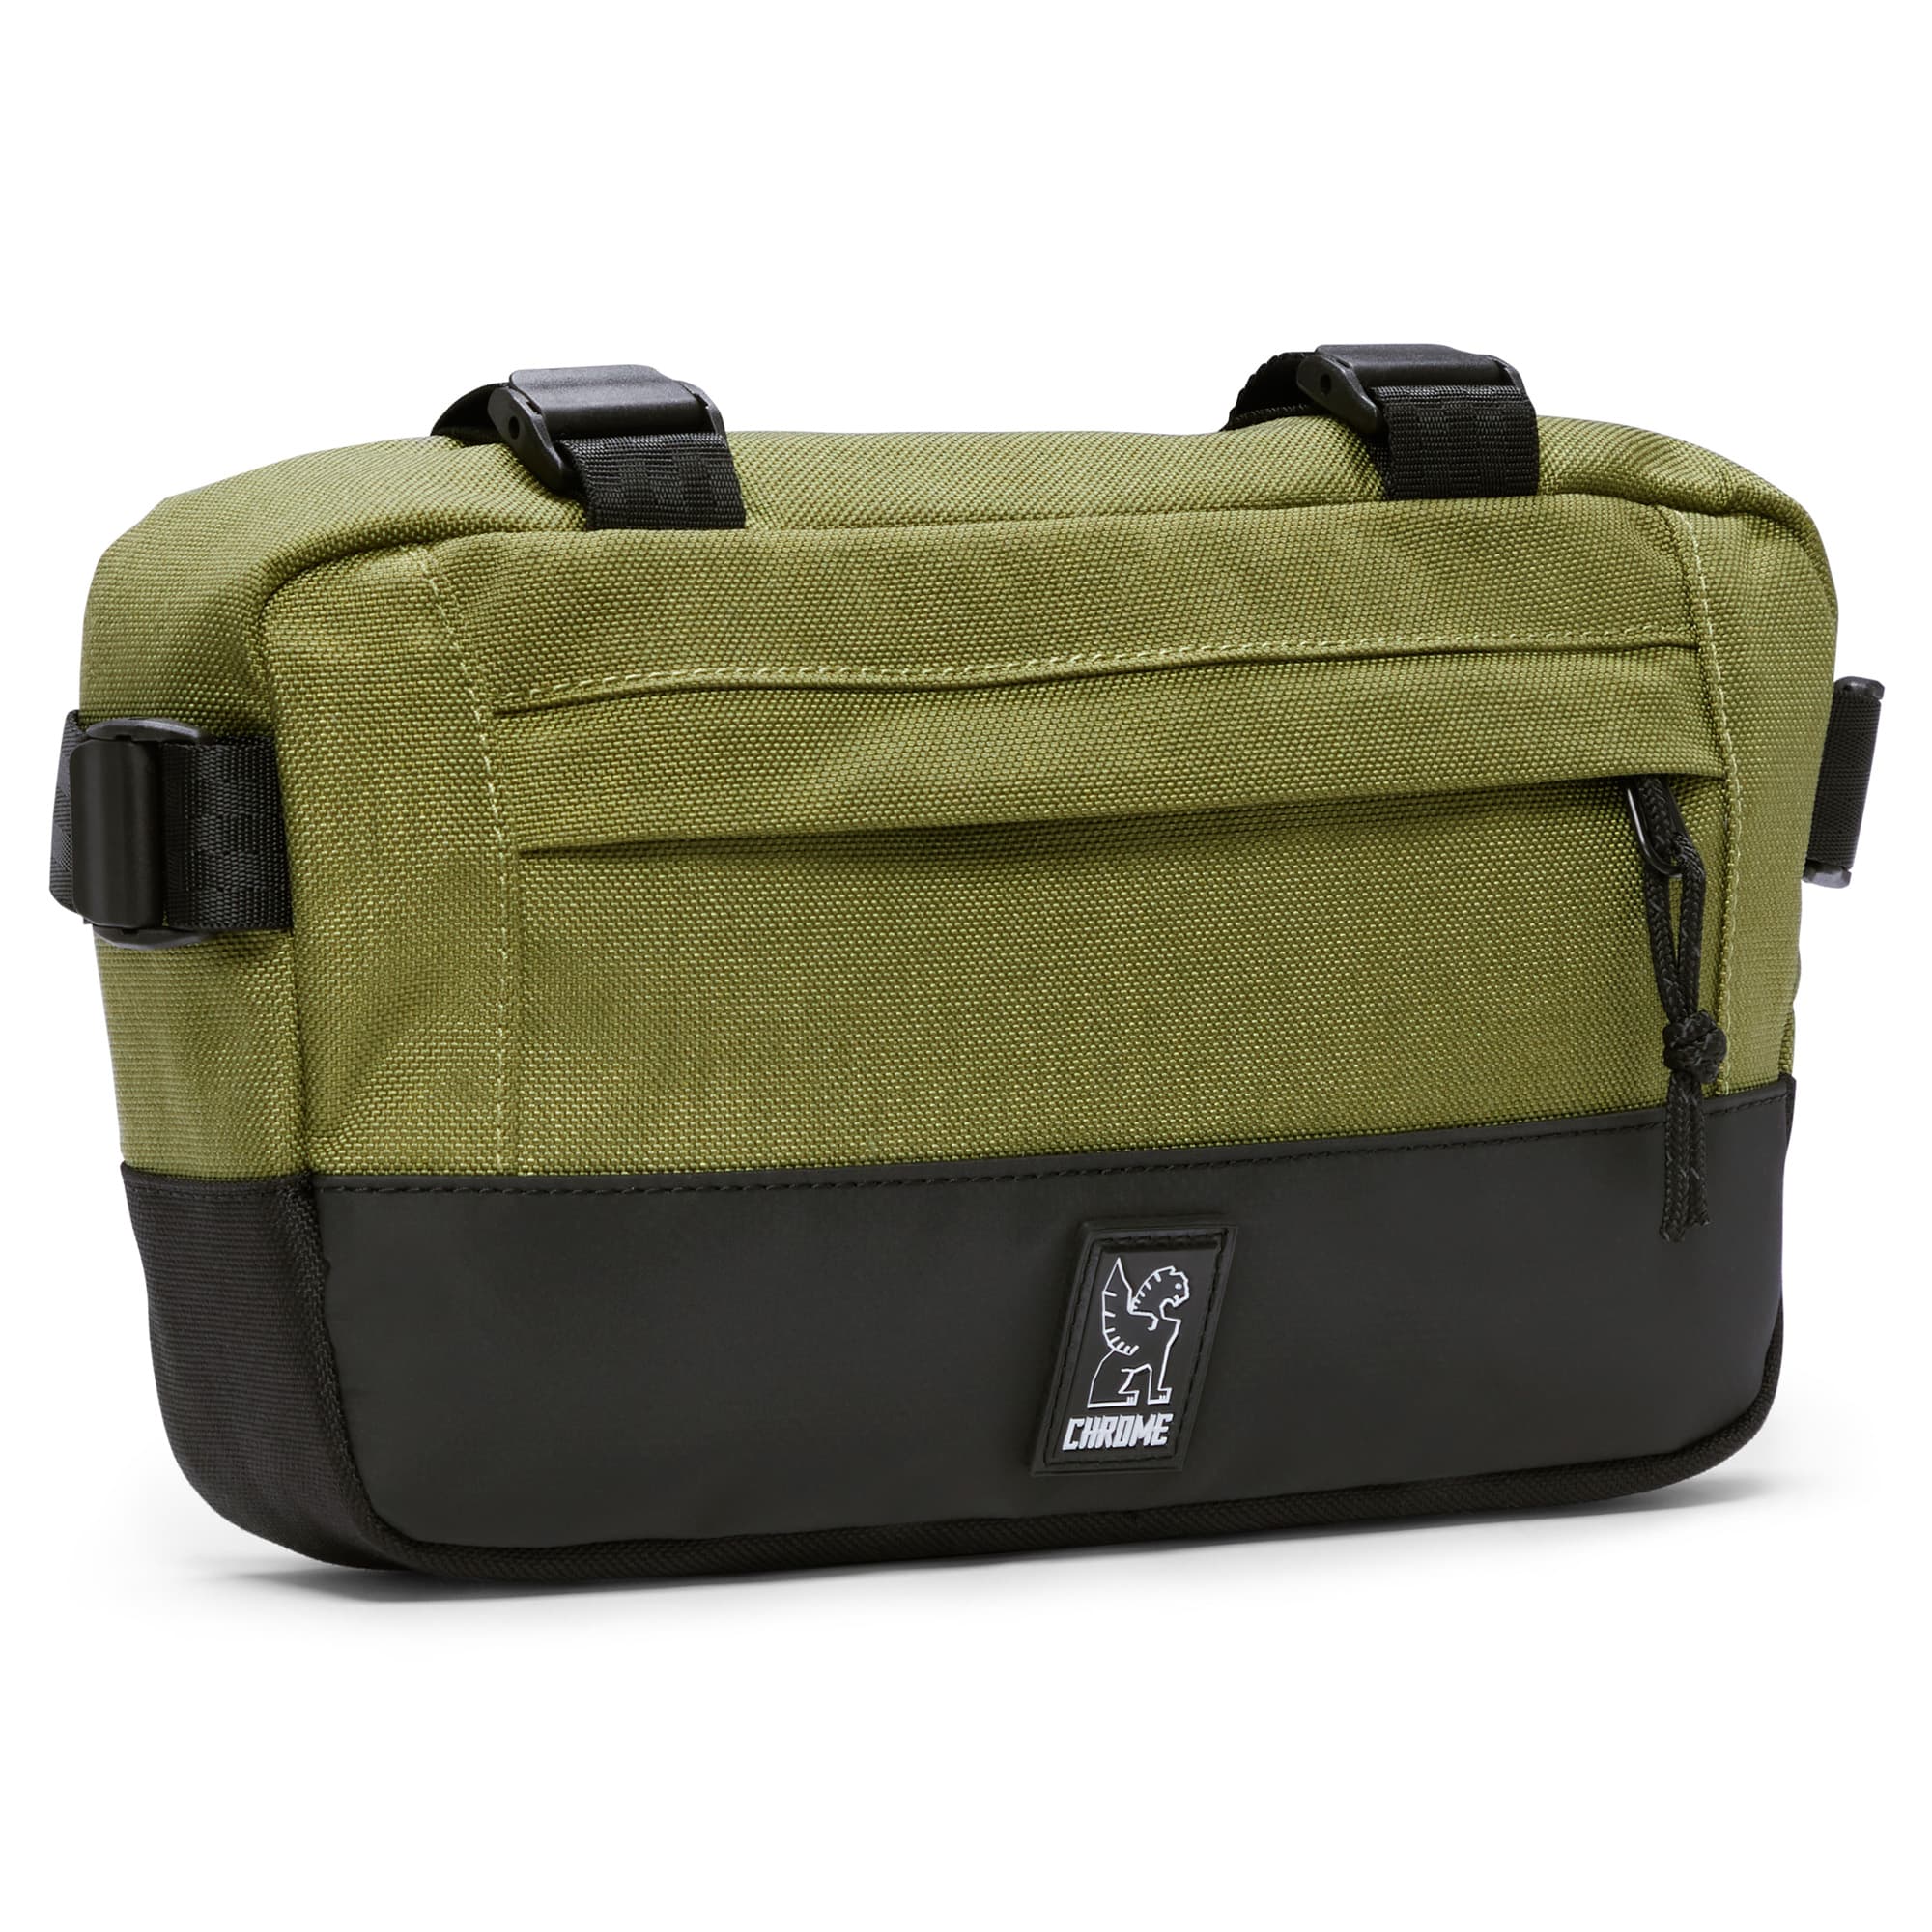 2L Doubletrack Frame Bag in green #color_olive branch